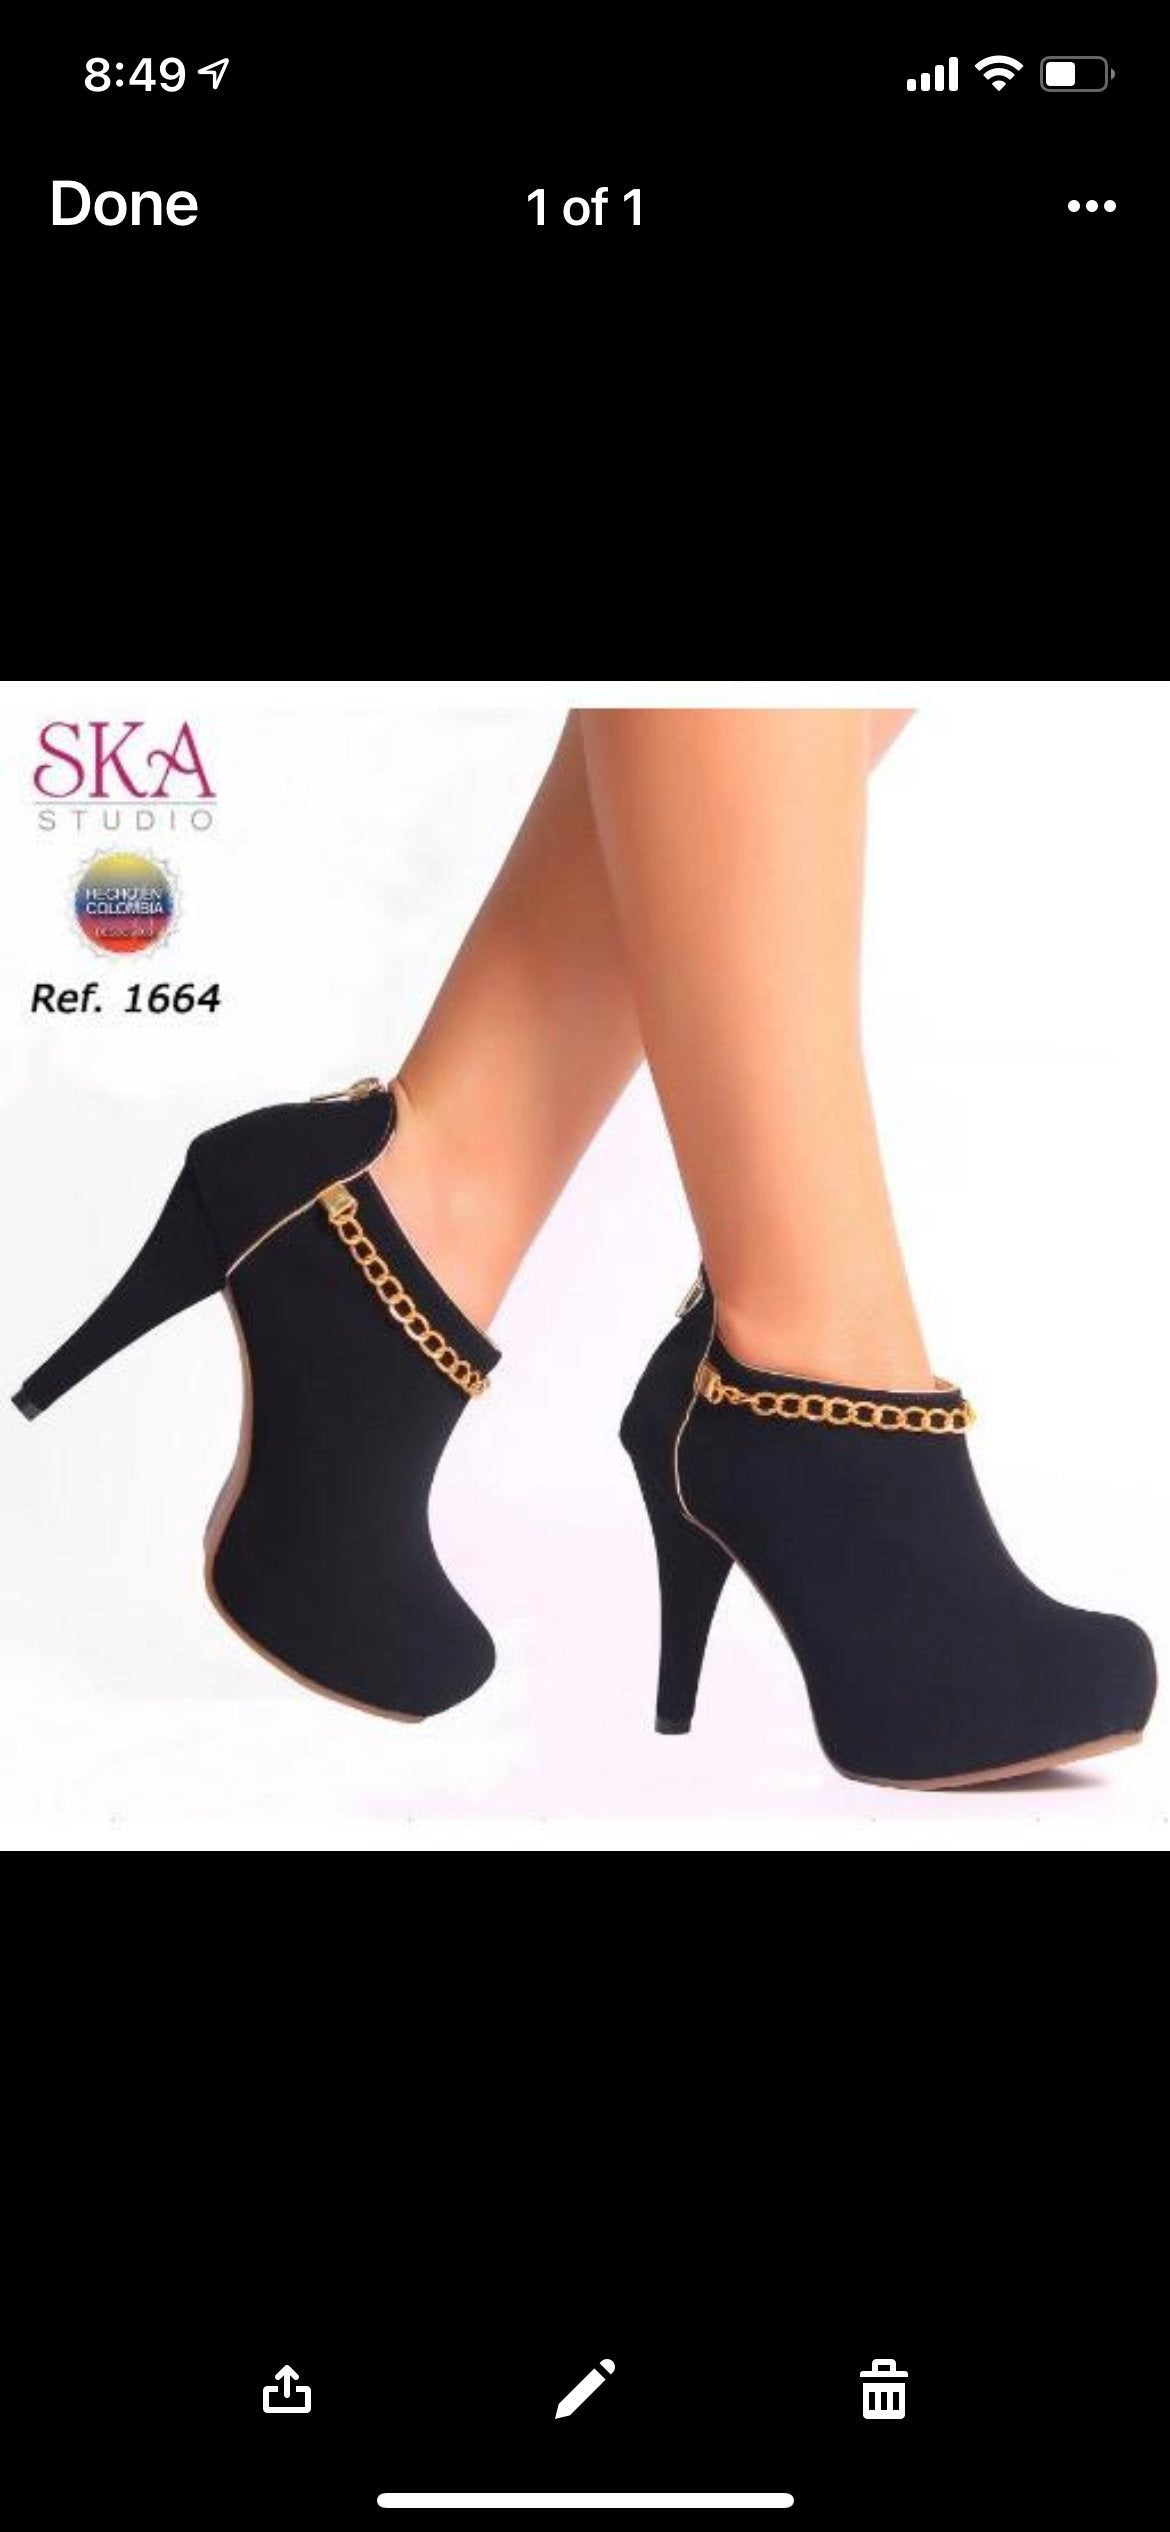 Ska Studio Shoes